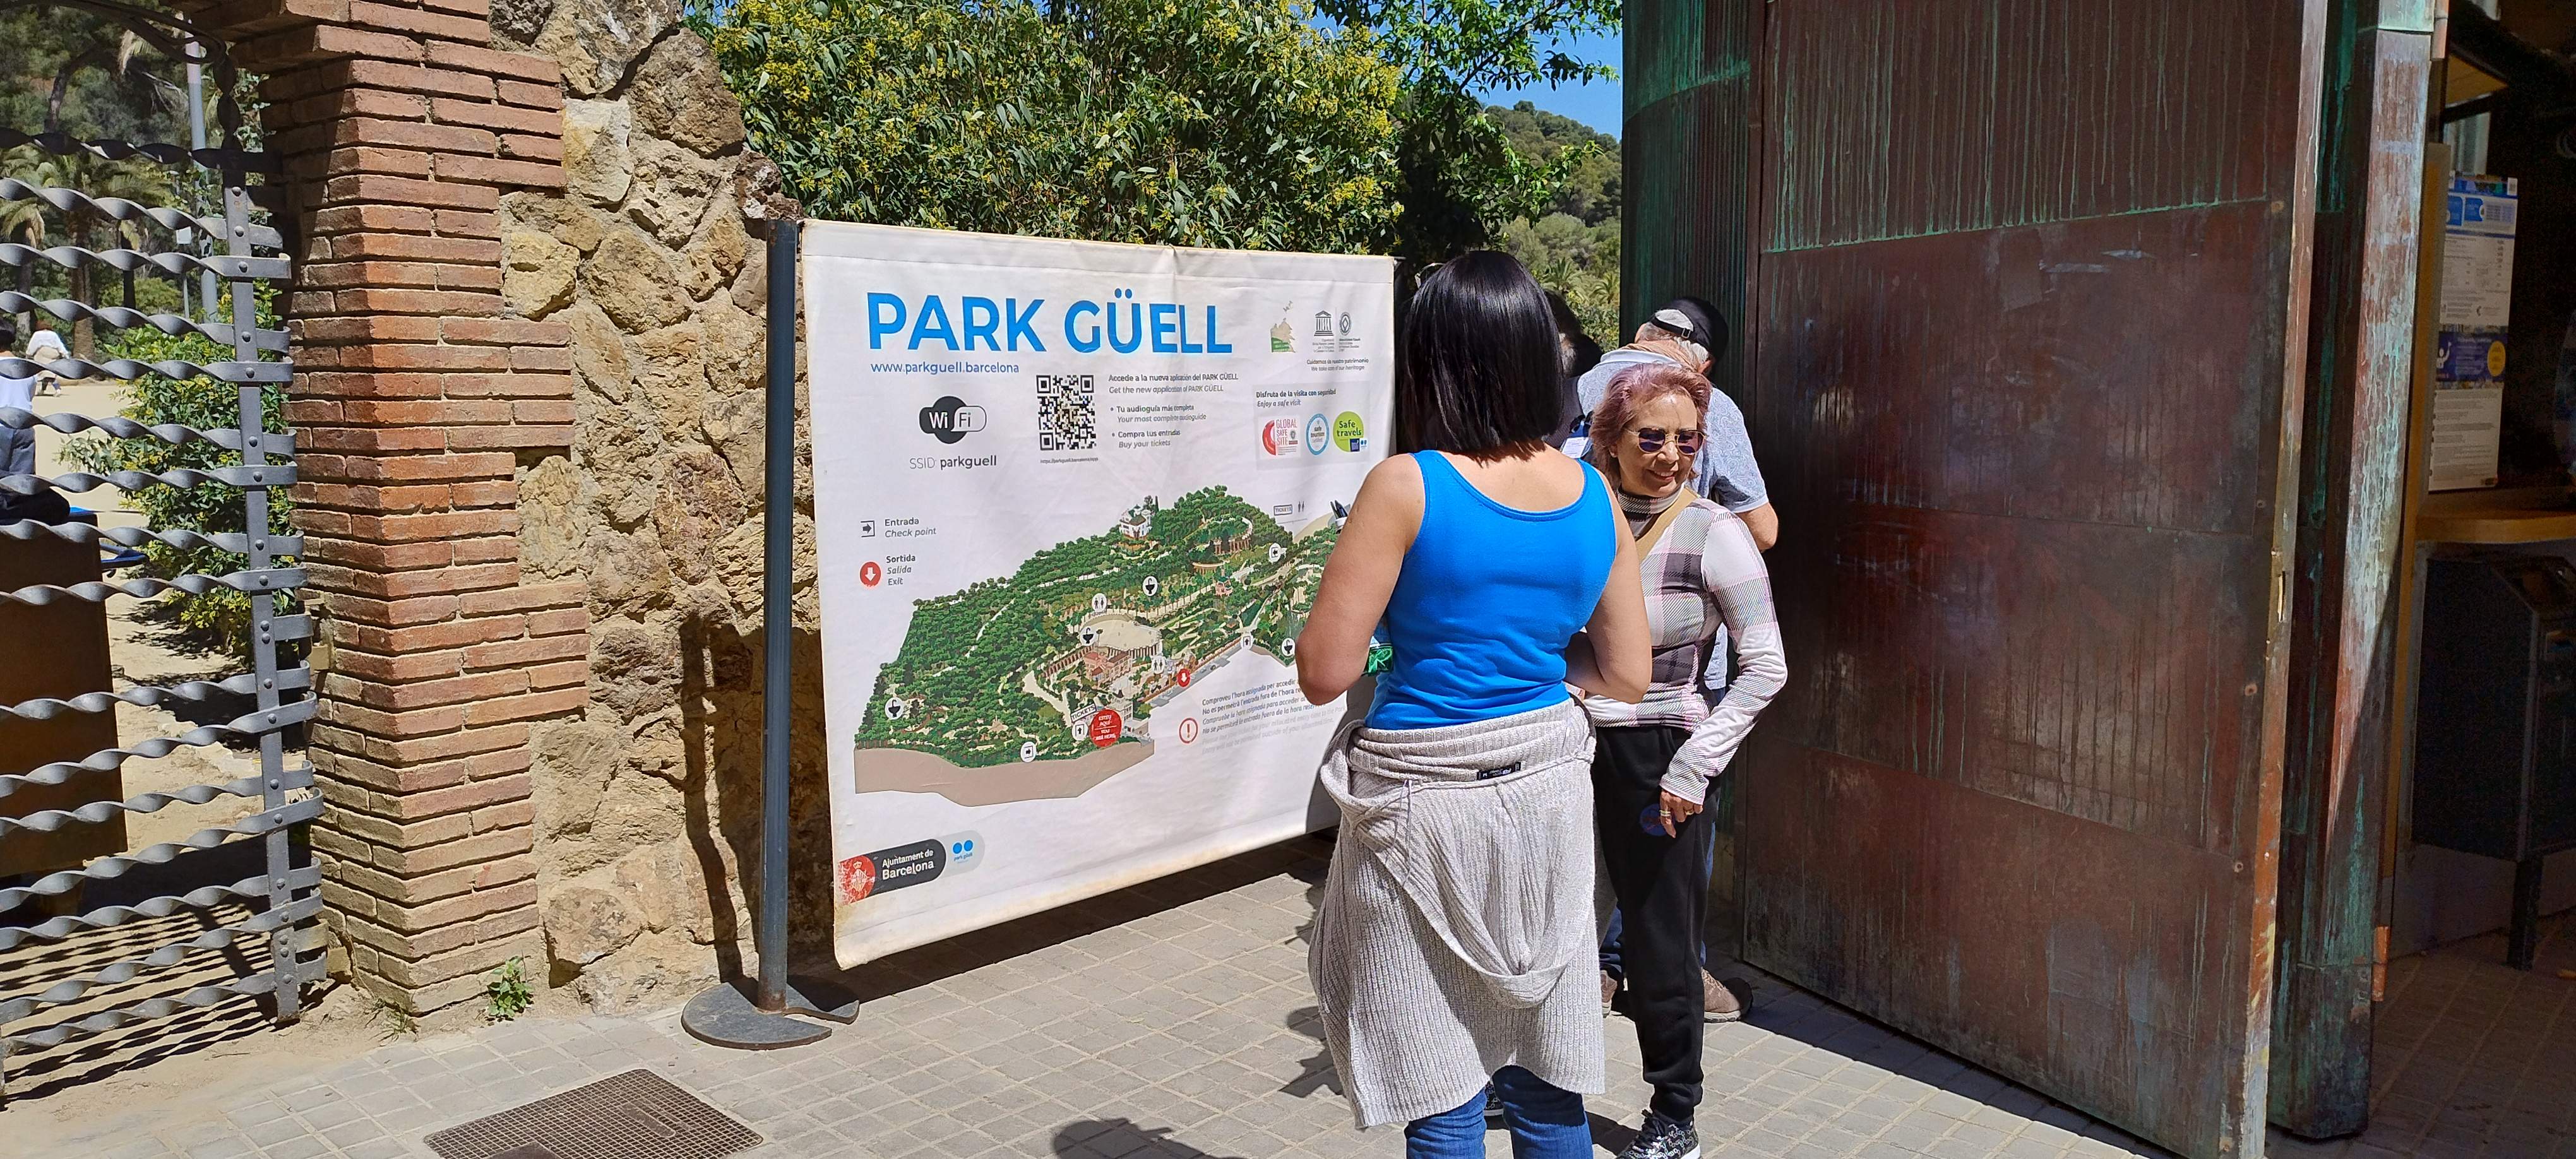 Las entradas del Park Güell se venderán exclusivamente por internet a partir del 1 de julio